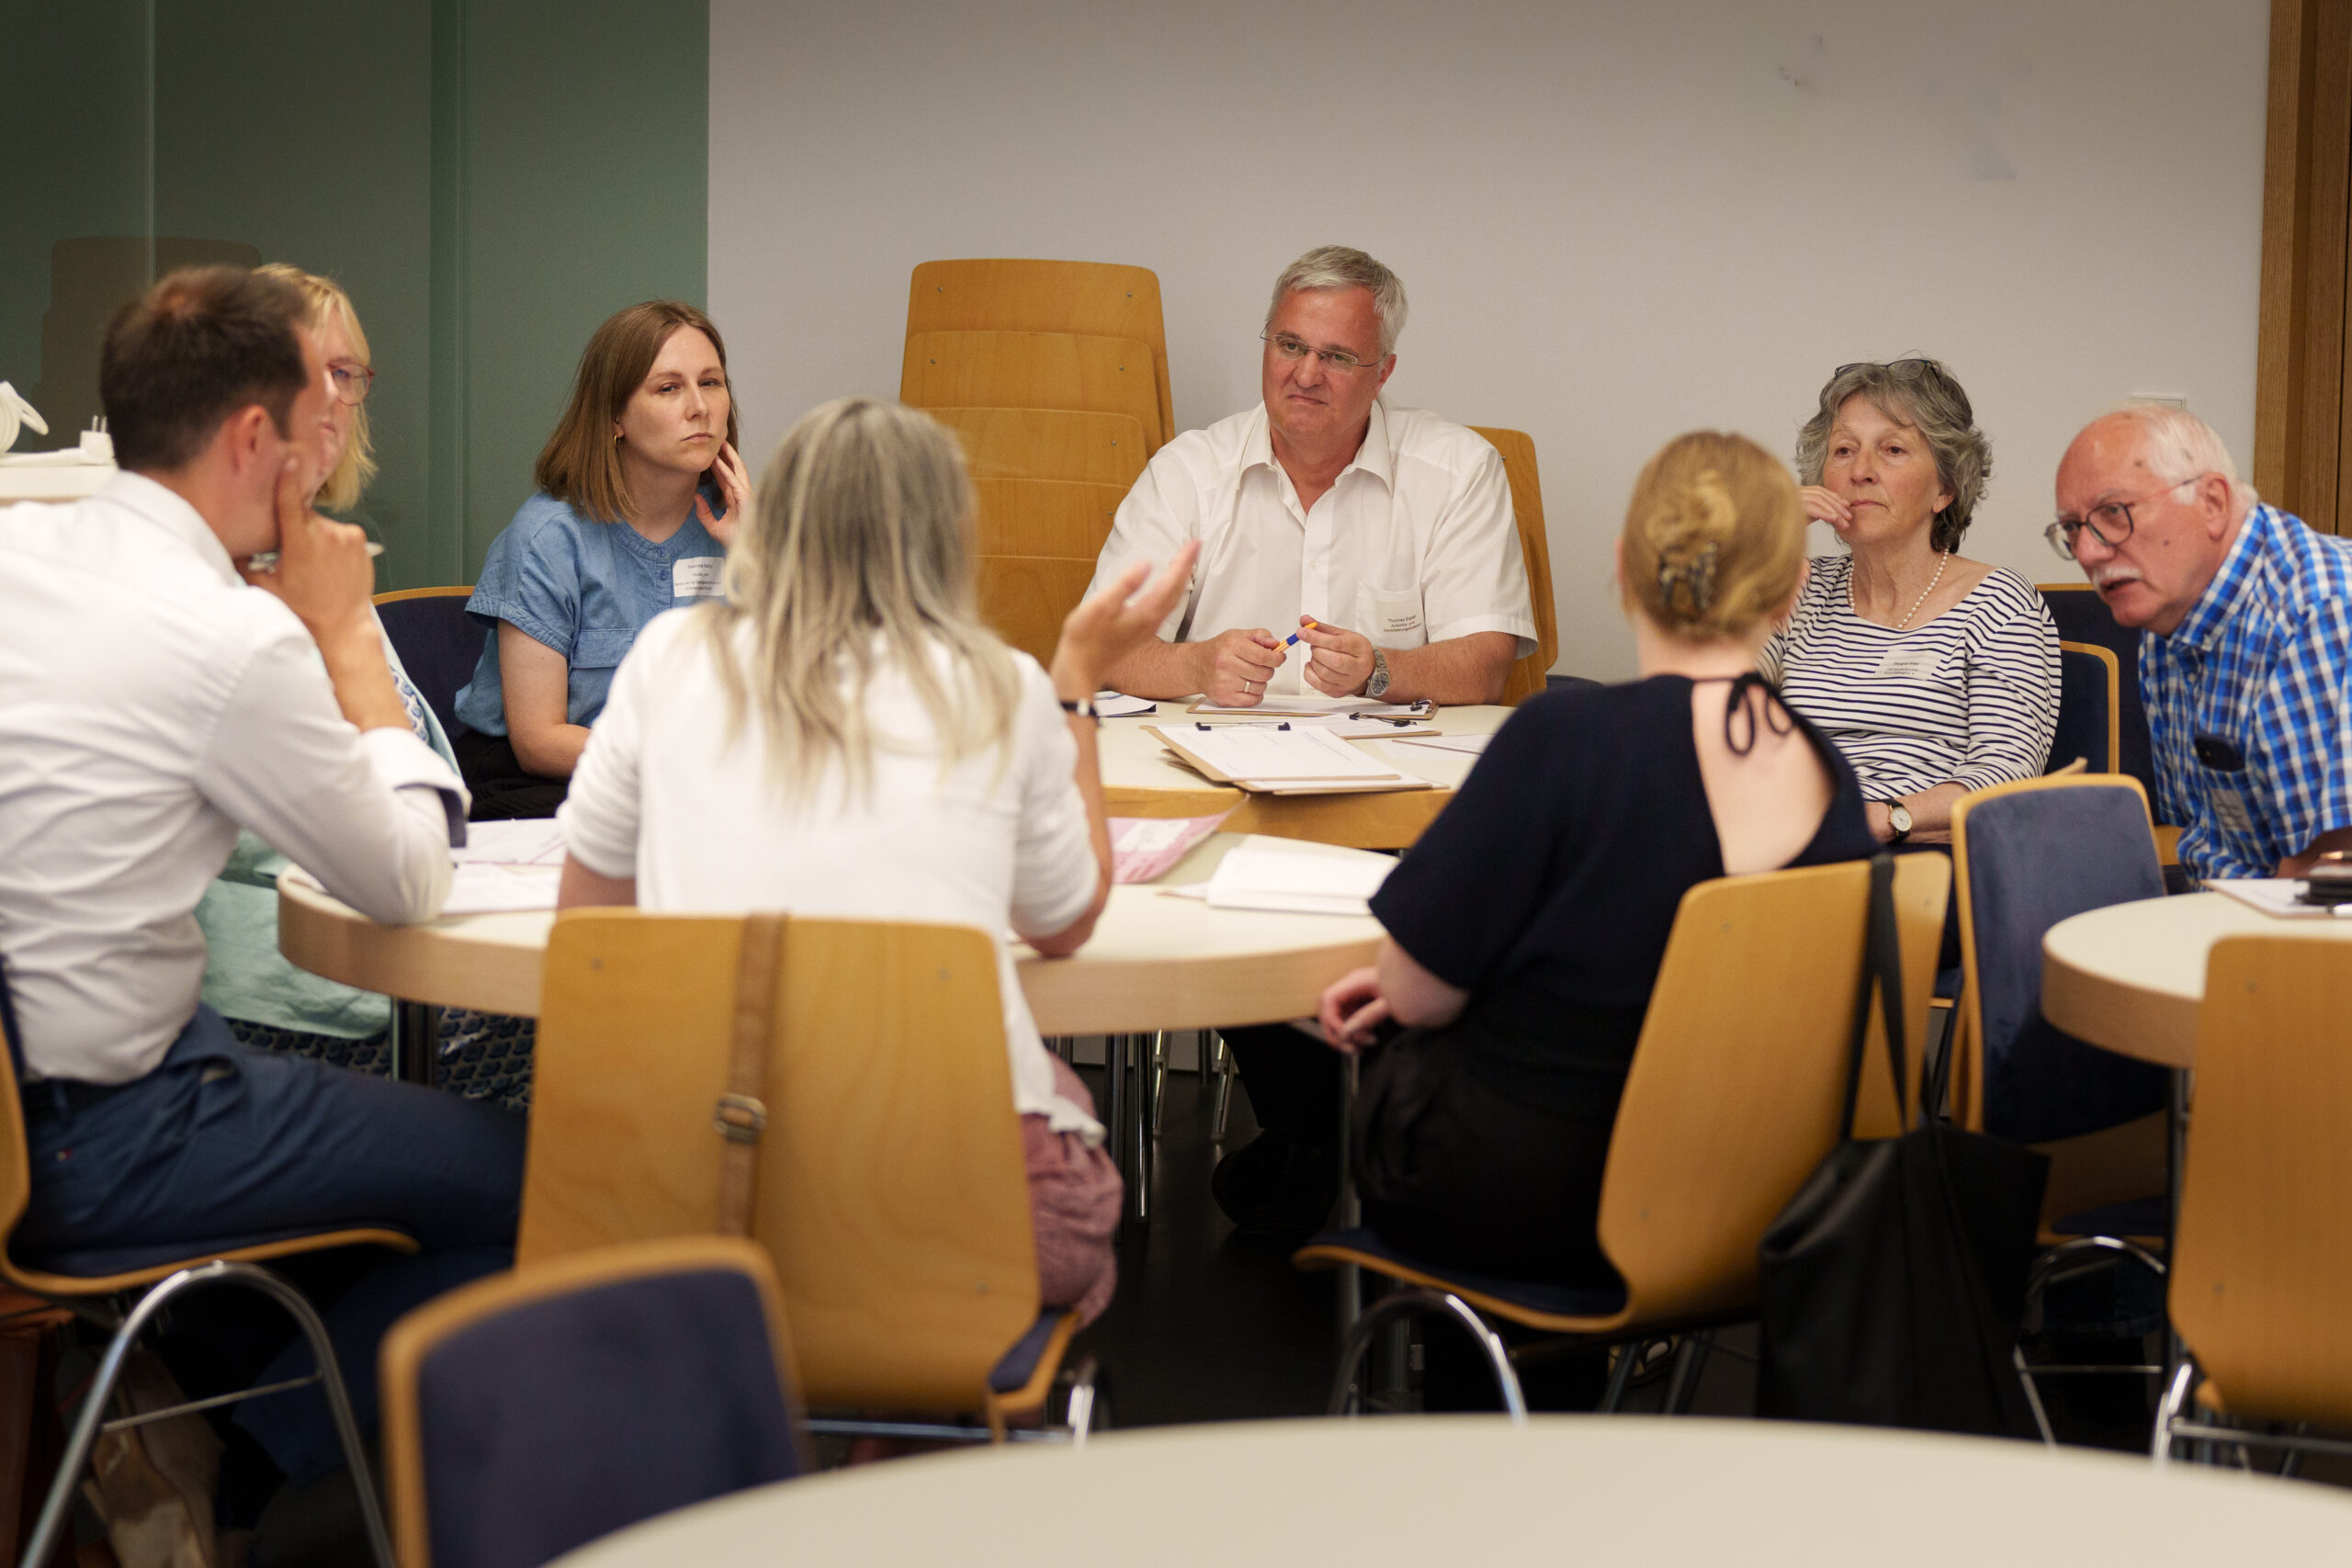 Diskussionsrunde des vierten Themenforums der Kulturentwicklungsplanung in Rheinland-Pfalz. Man diskutiert lebhaft und sitzt um einen runden Tisch. Es sind drei Männer und fünf Frauen